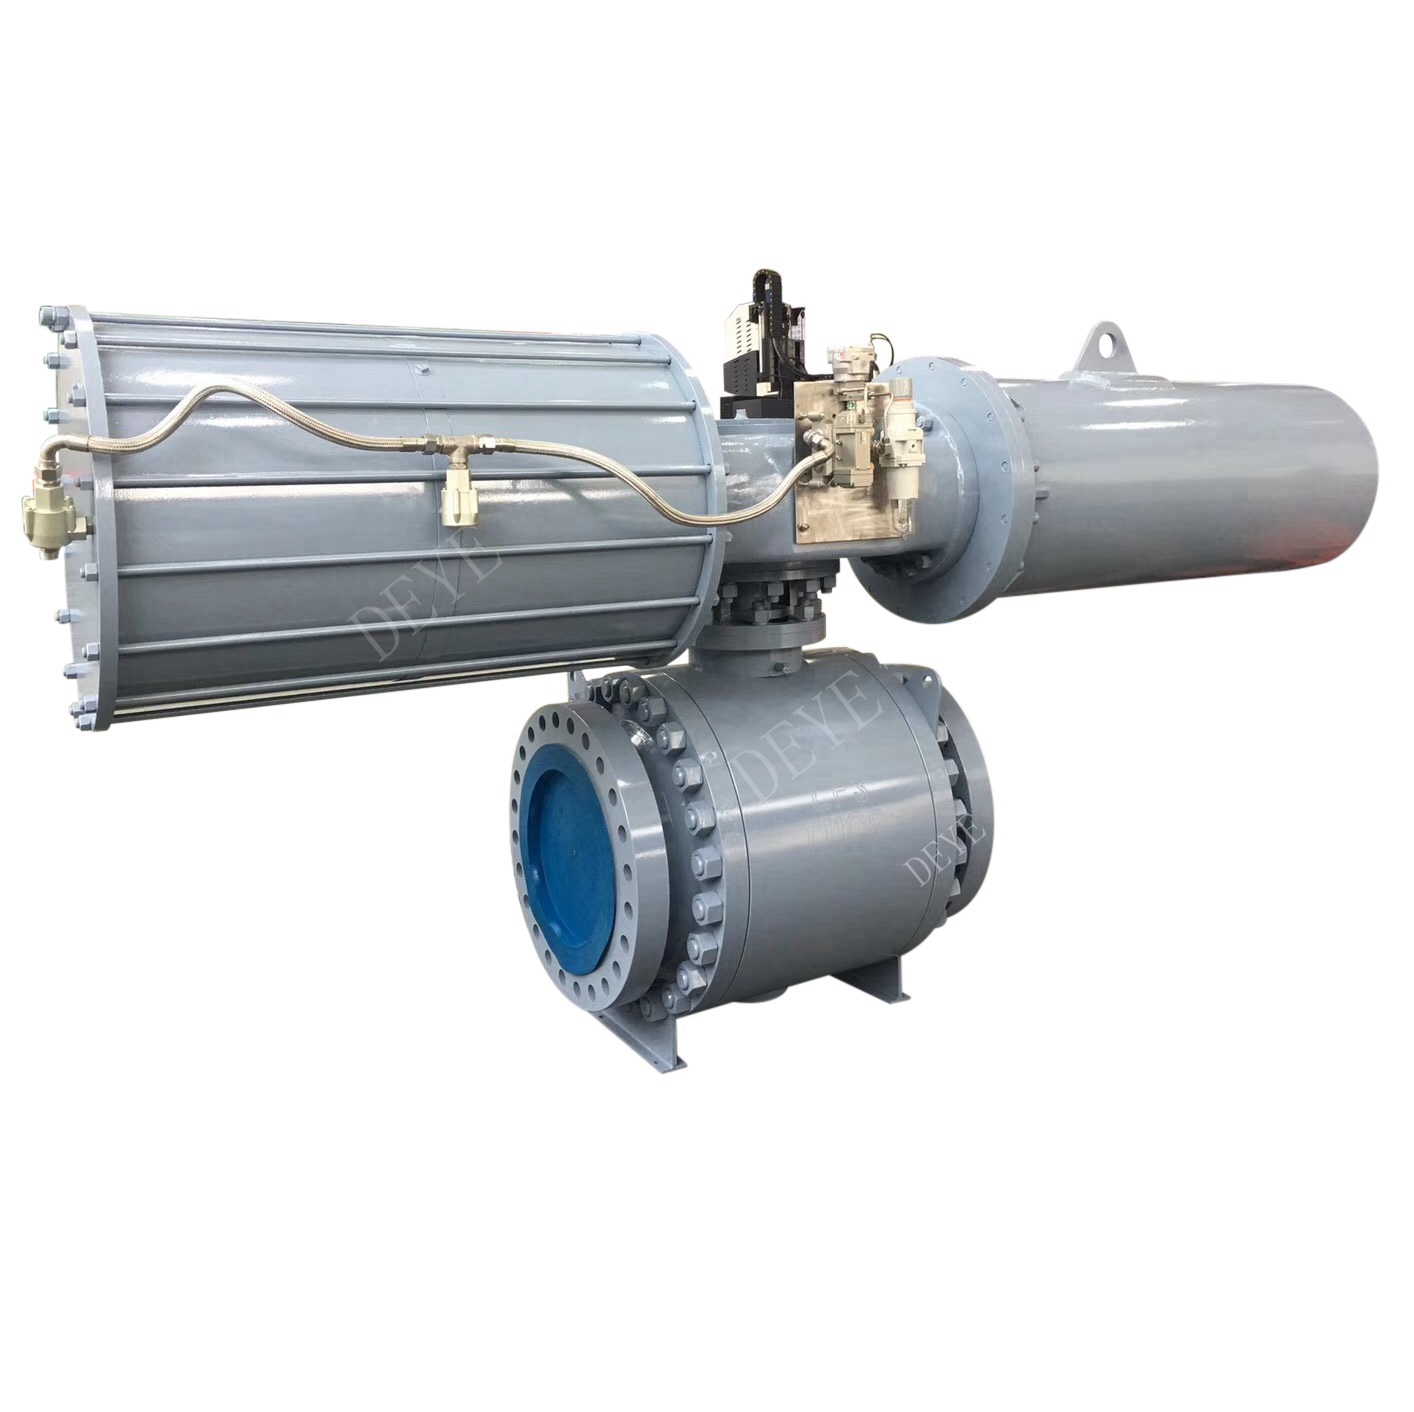 공압식 액추에이터가 포함된 API 600LBS 주강 볼 밸브(BV-0600-08-P)